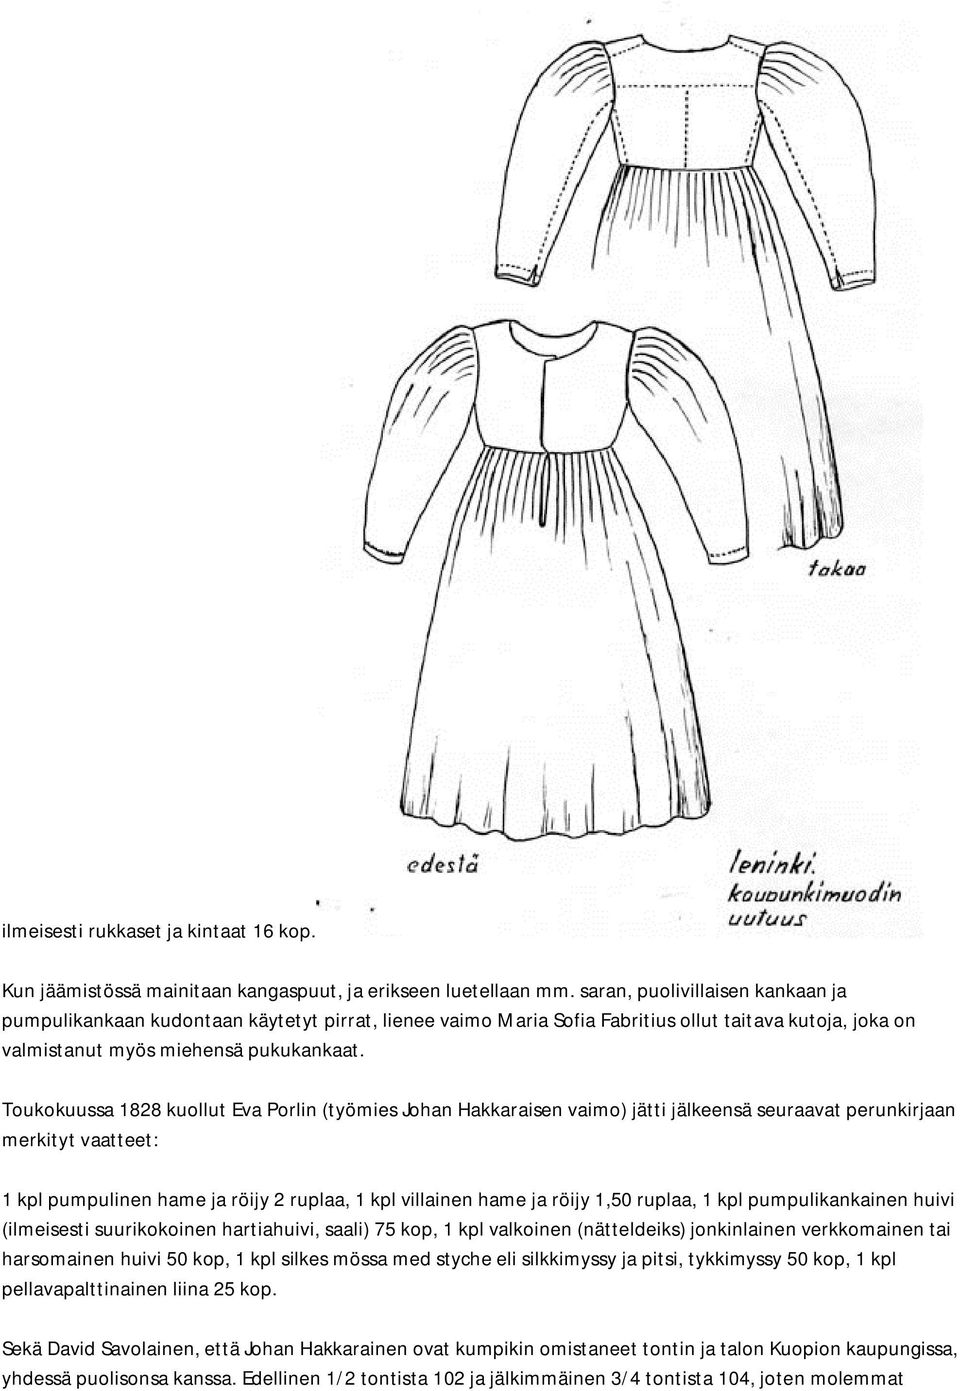 Toukokuussa 1828 kuollut Eva Porlin (työmies Johan Hakkaraisen vaimo) jätti jälkeensä seuraavat perunkirjaan merkityt vaatteet: 1 kpl pumpulinen hame ja röijy 2 ruplaa, 1 kpl villainen hame ja röijy